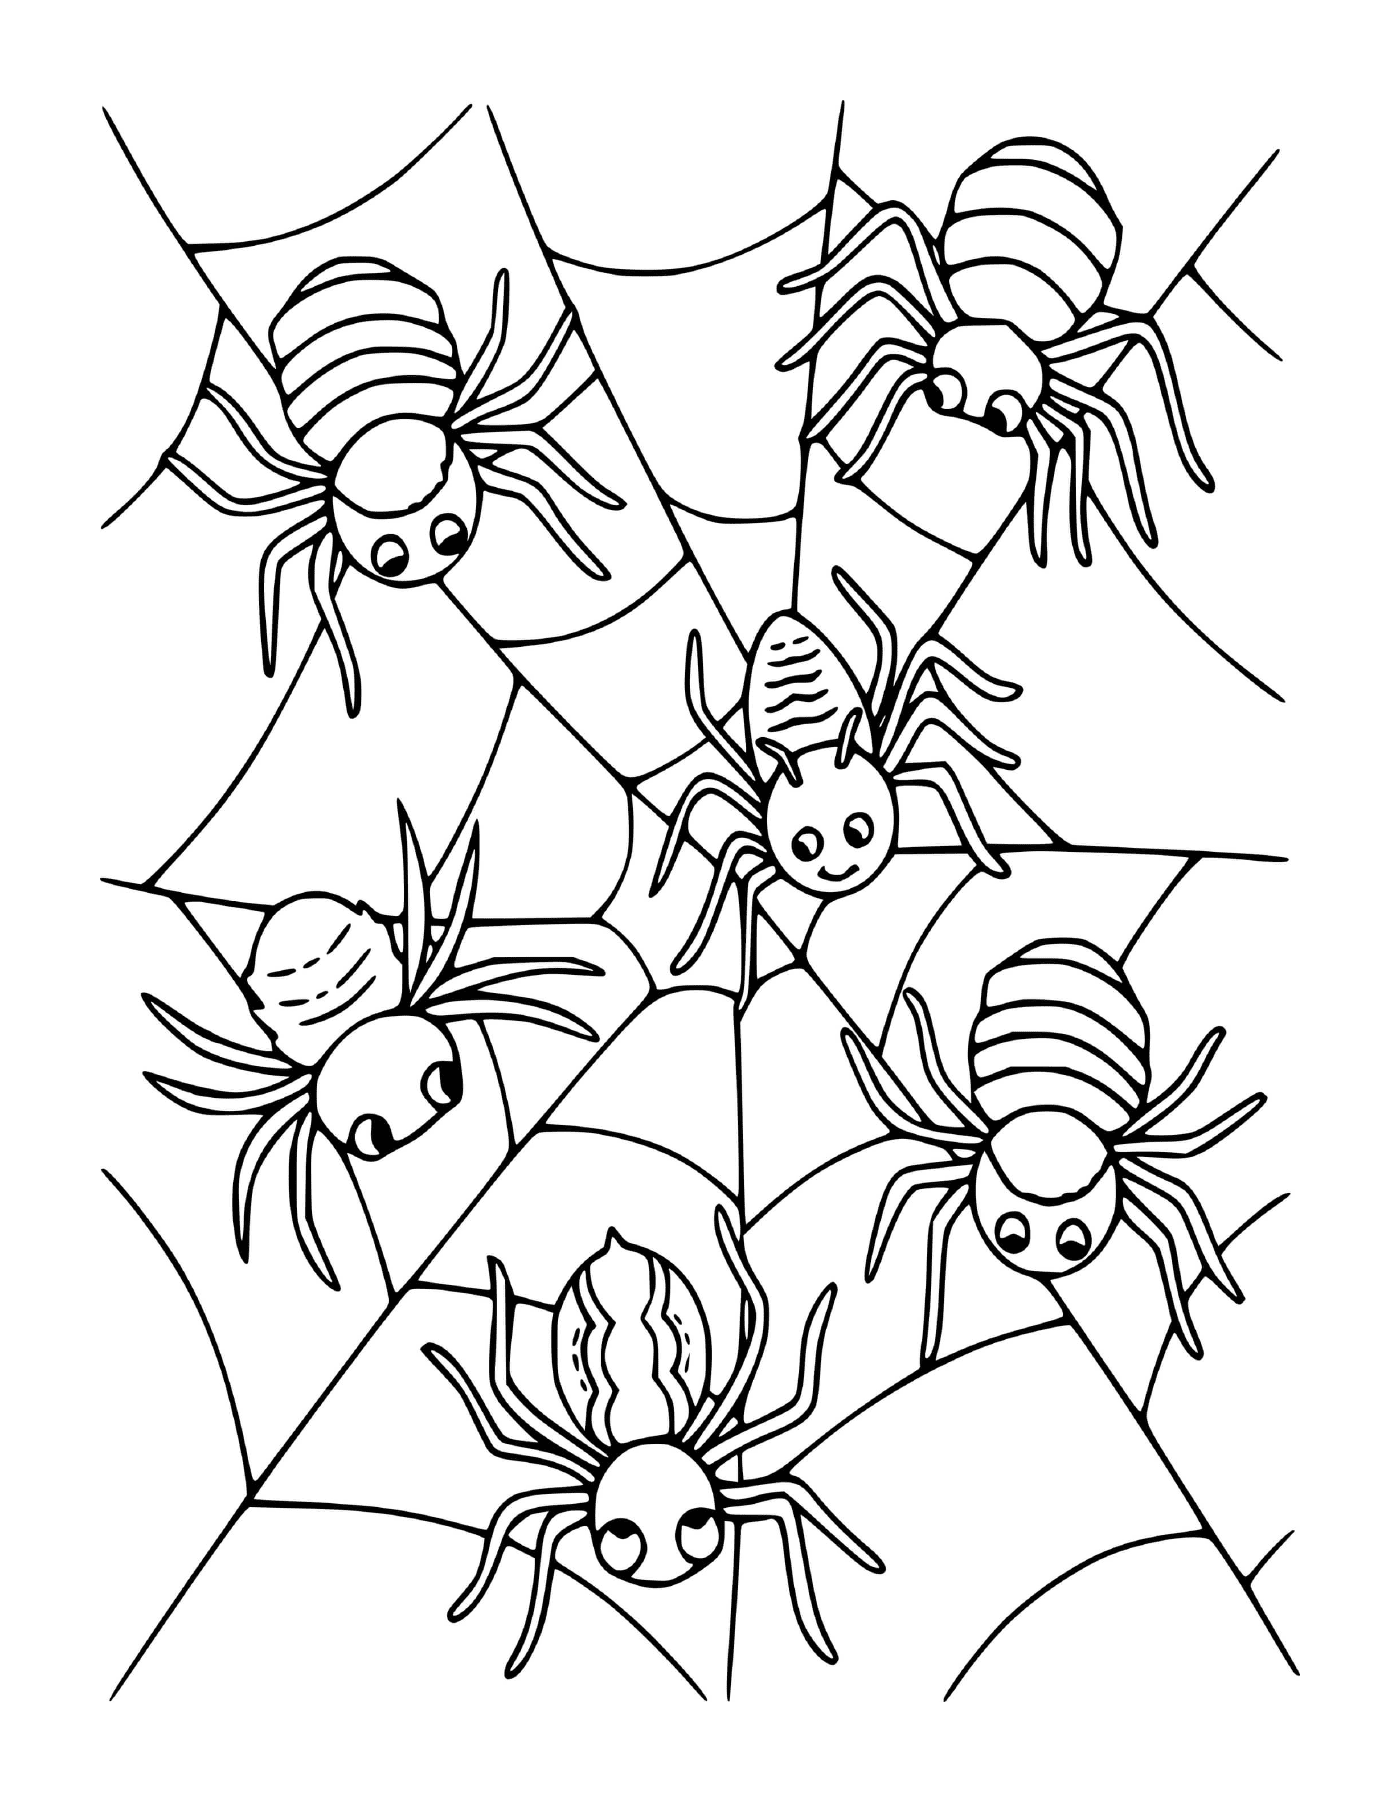  一群四只蜘蛛 坐在网络上 